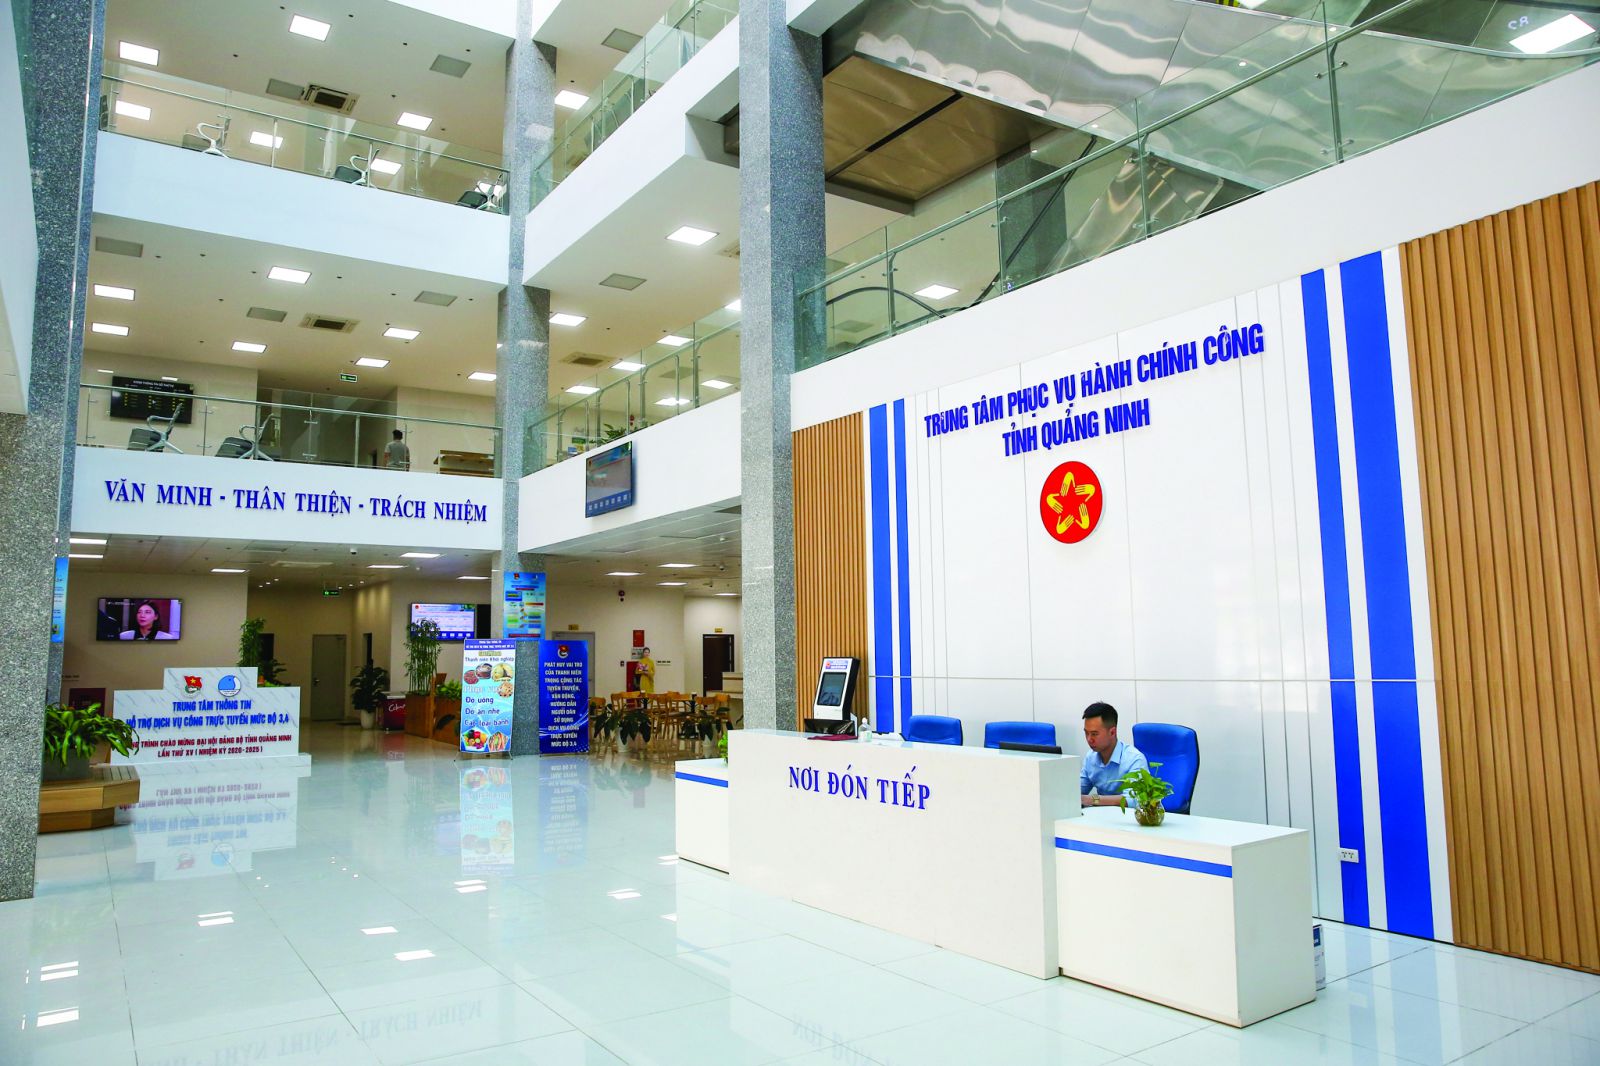 Trung tâm Phục vụ hành chính công tỉnh Quảng Ninh là nơi thực hiện tiếp nhận và giải quyết thủ tục hành chính cho người dân. Ảnh: Cổng thông tin điện tử tỉnh Quảng Ninh